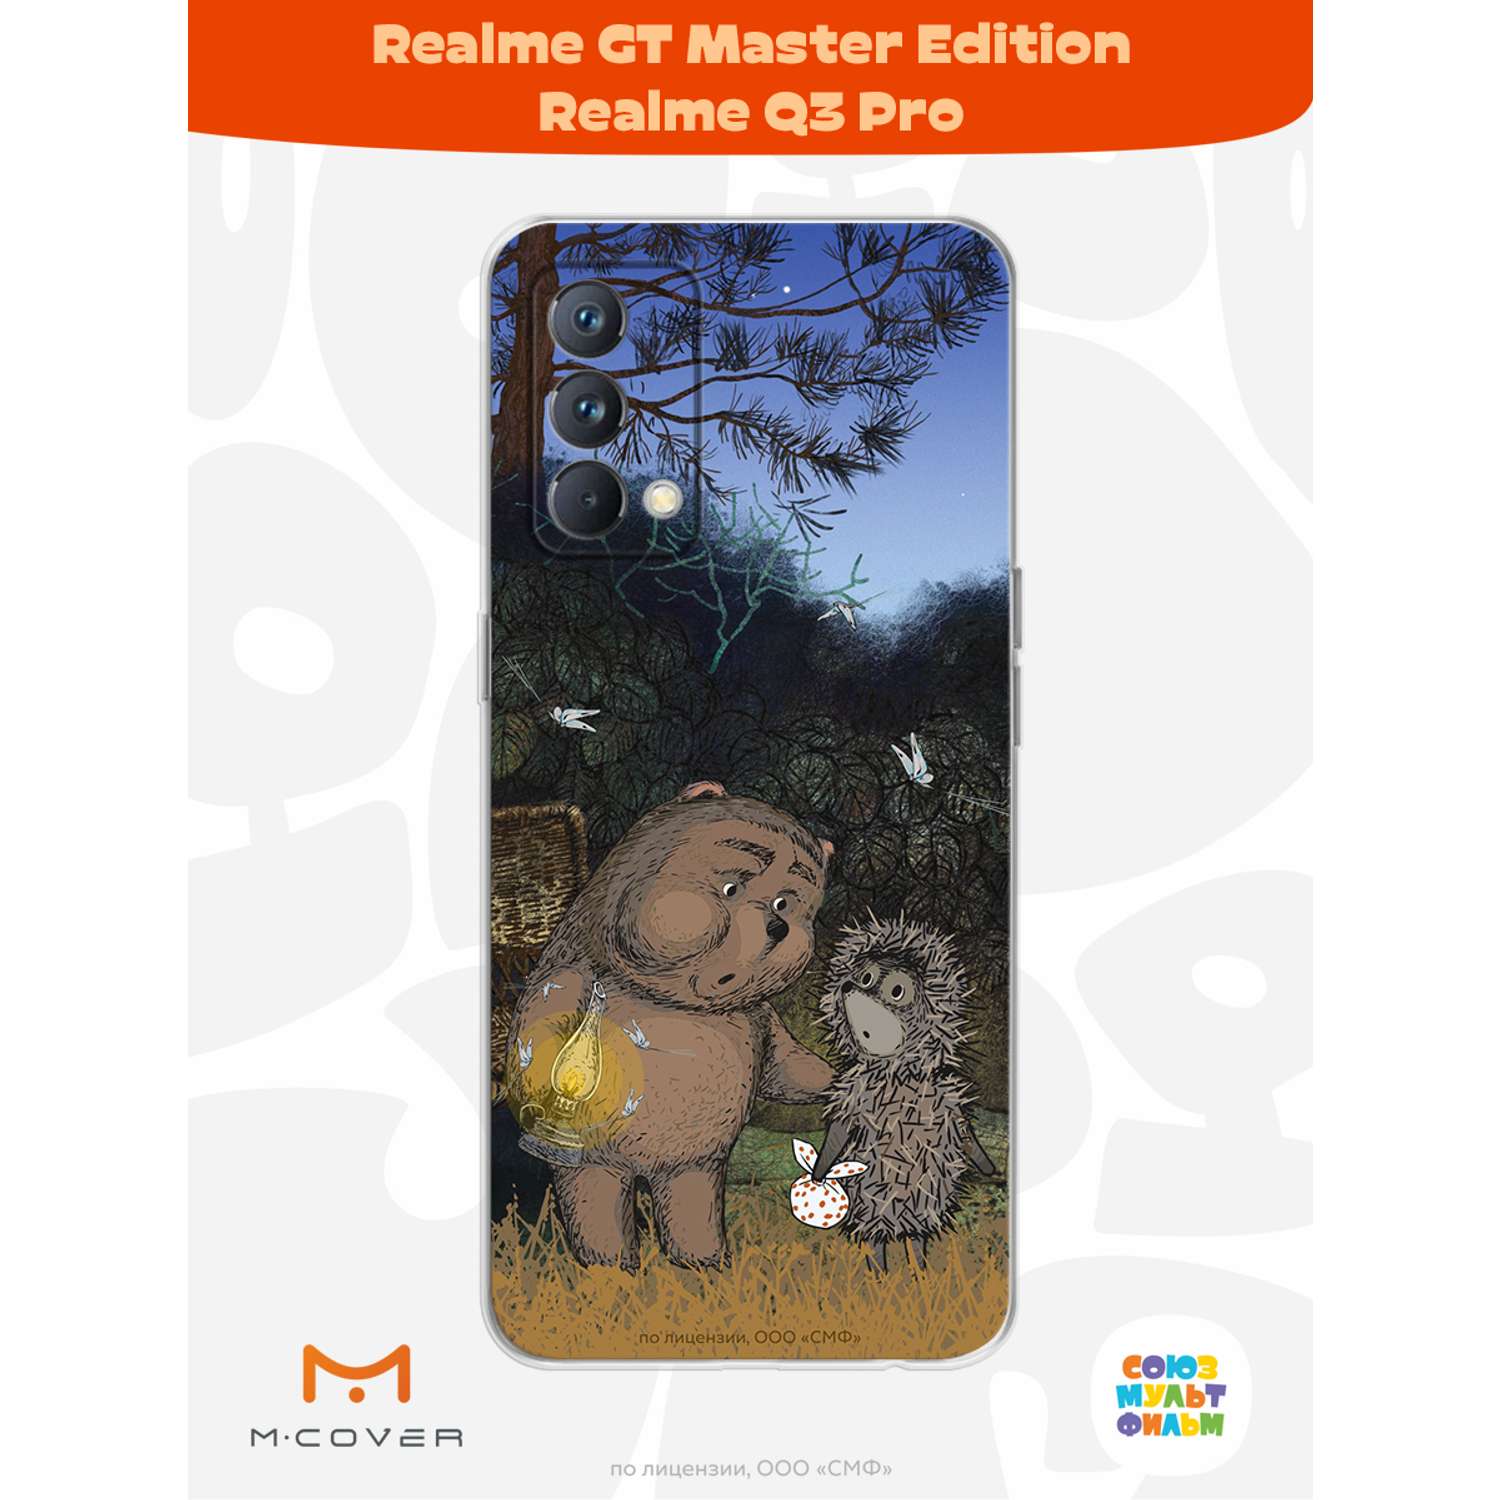 Силиконовый чехол Mcover для смартфона Realme GT Master Edition Q3 Pro Союзмультфильм Ежик в тумане и медвежонок - фото 2